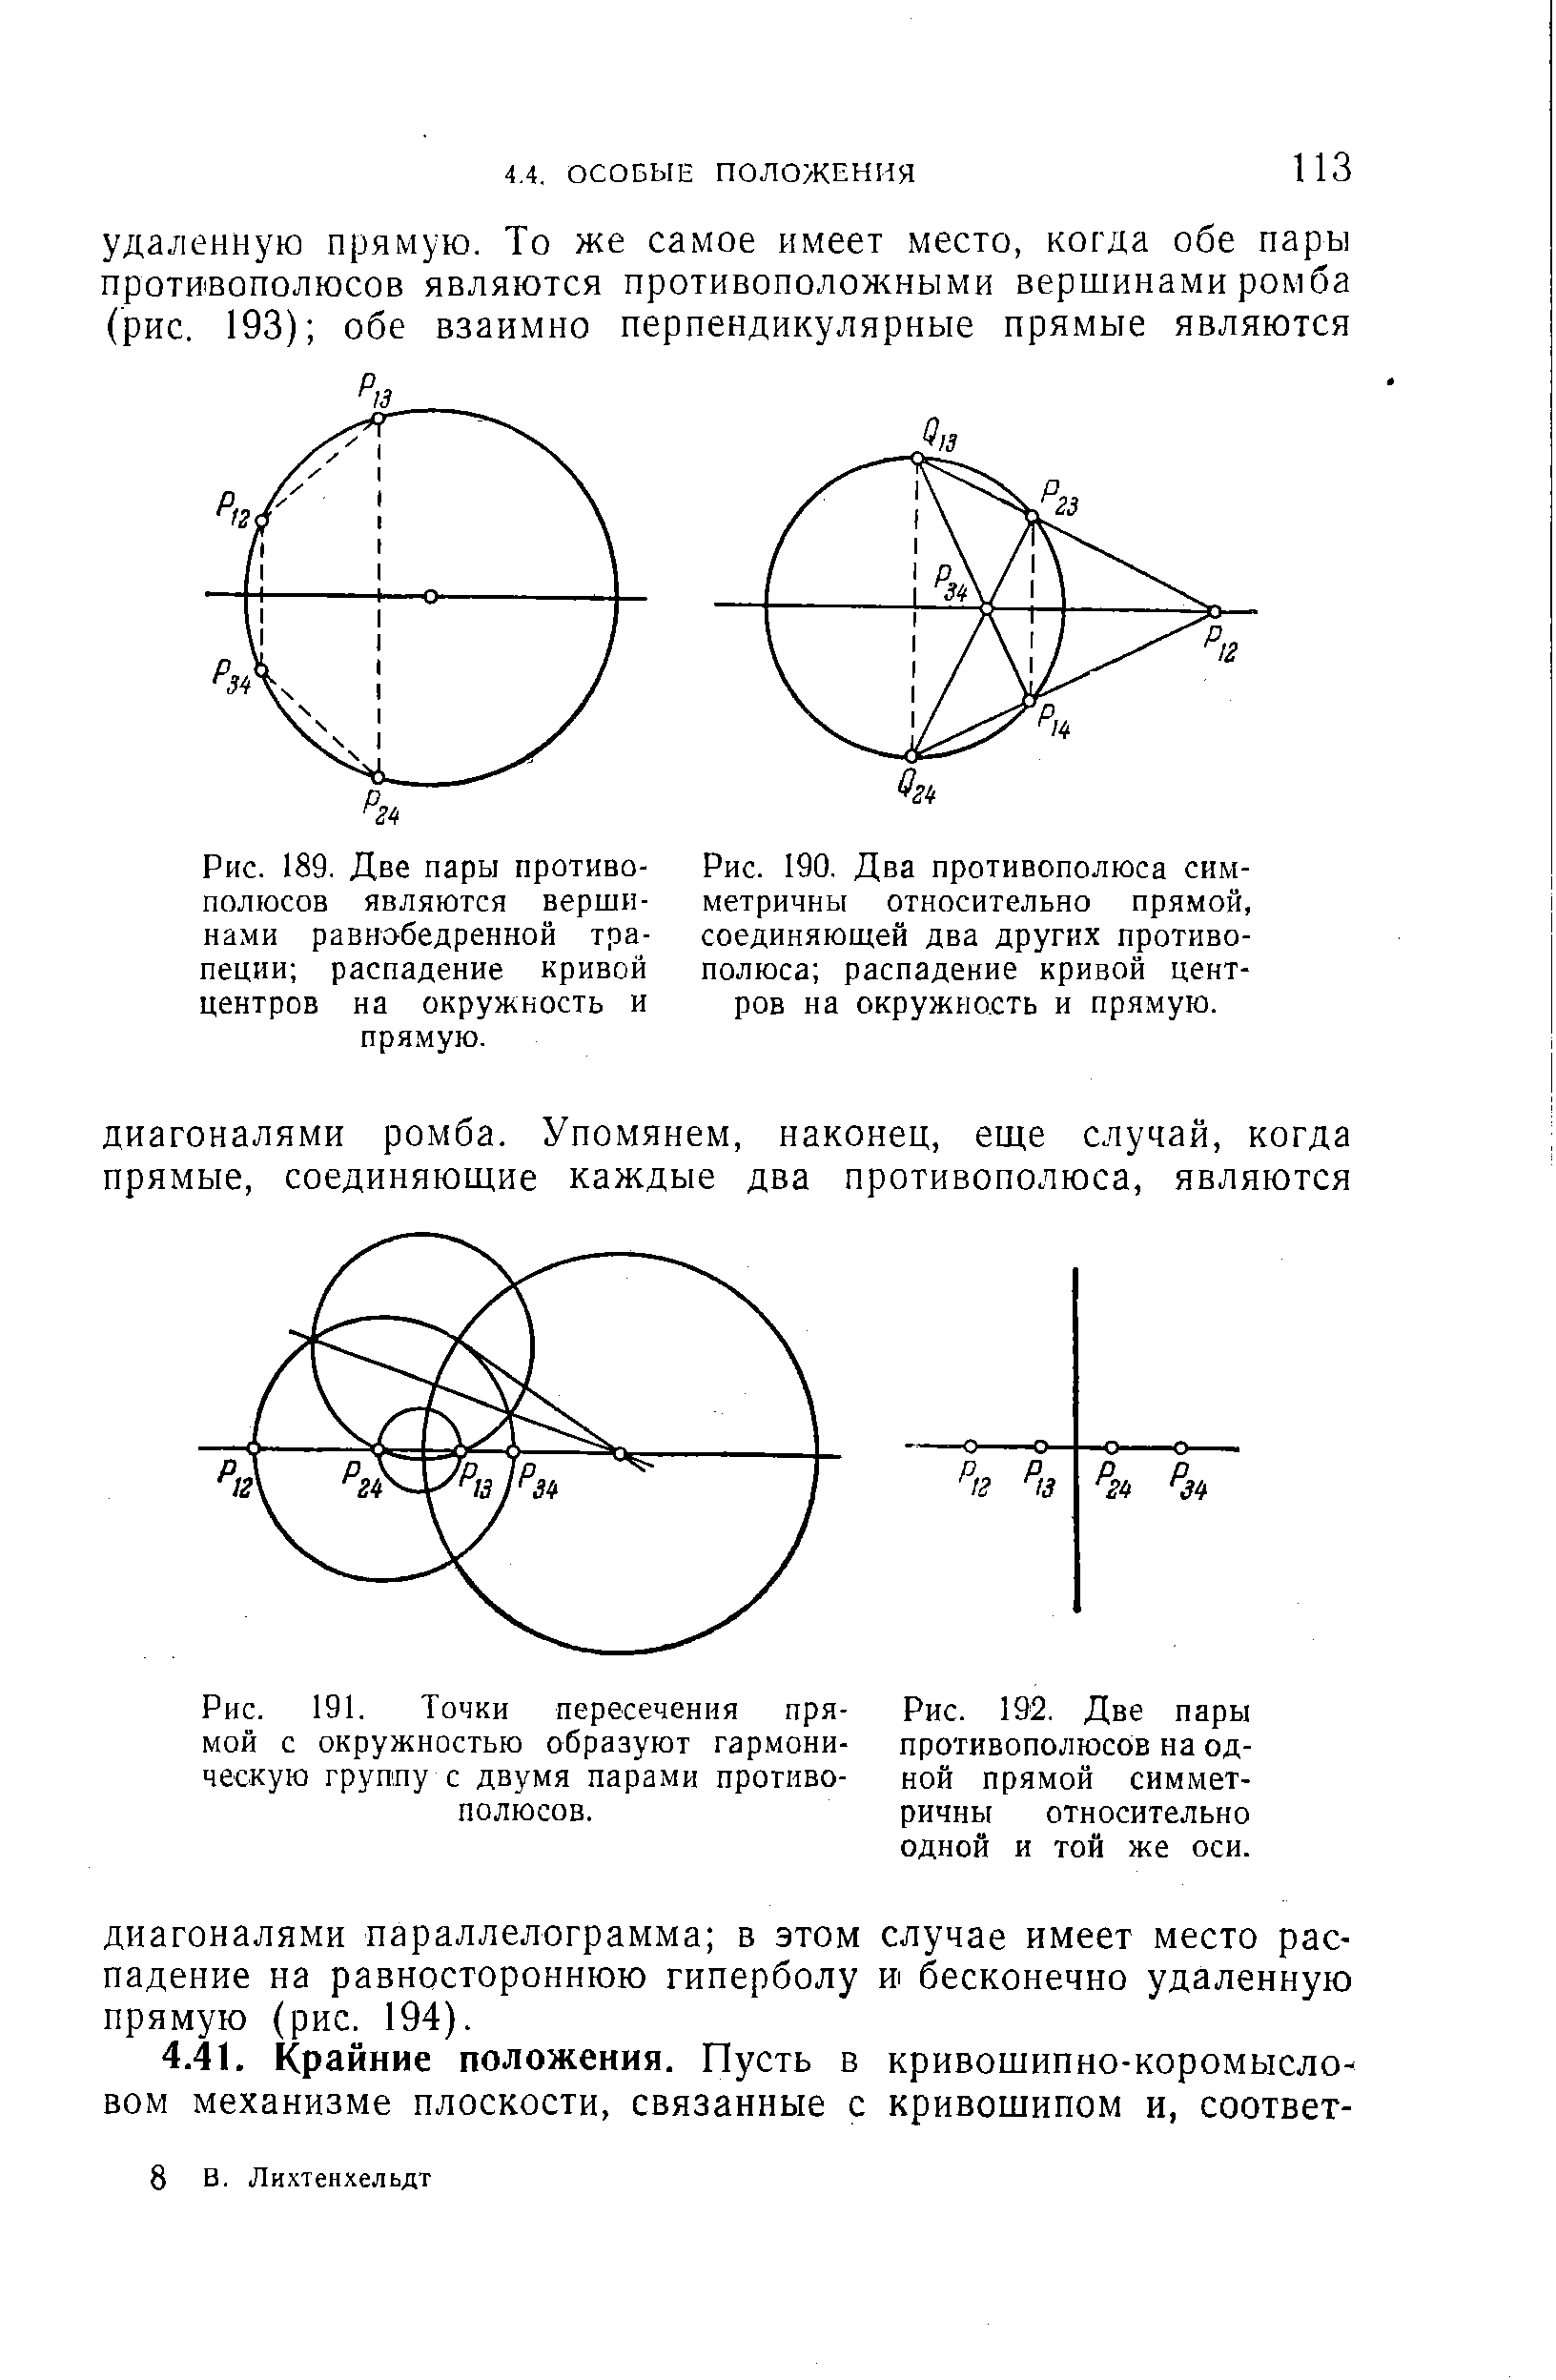 Рис. 190. Два противополюса симметричны относительно прямой, соединяющей два других противополюса распадение кривой центров на окружность и прямую.
